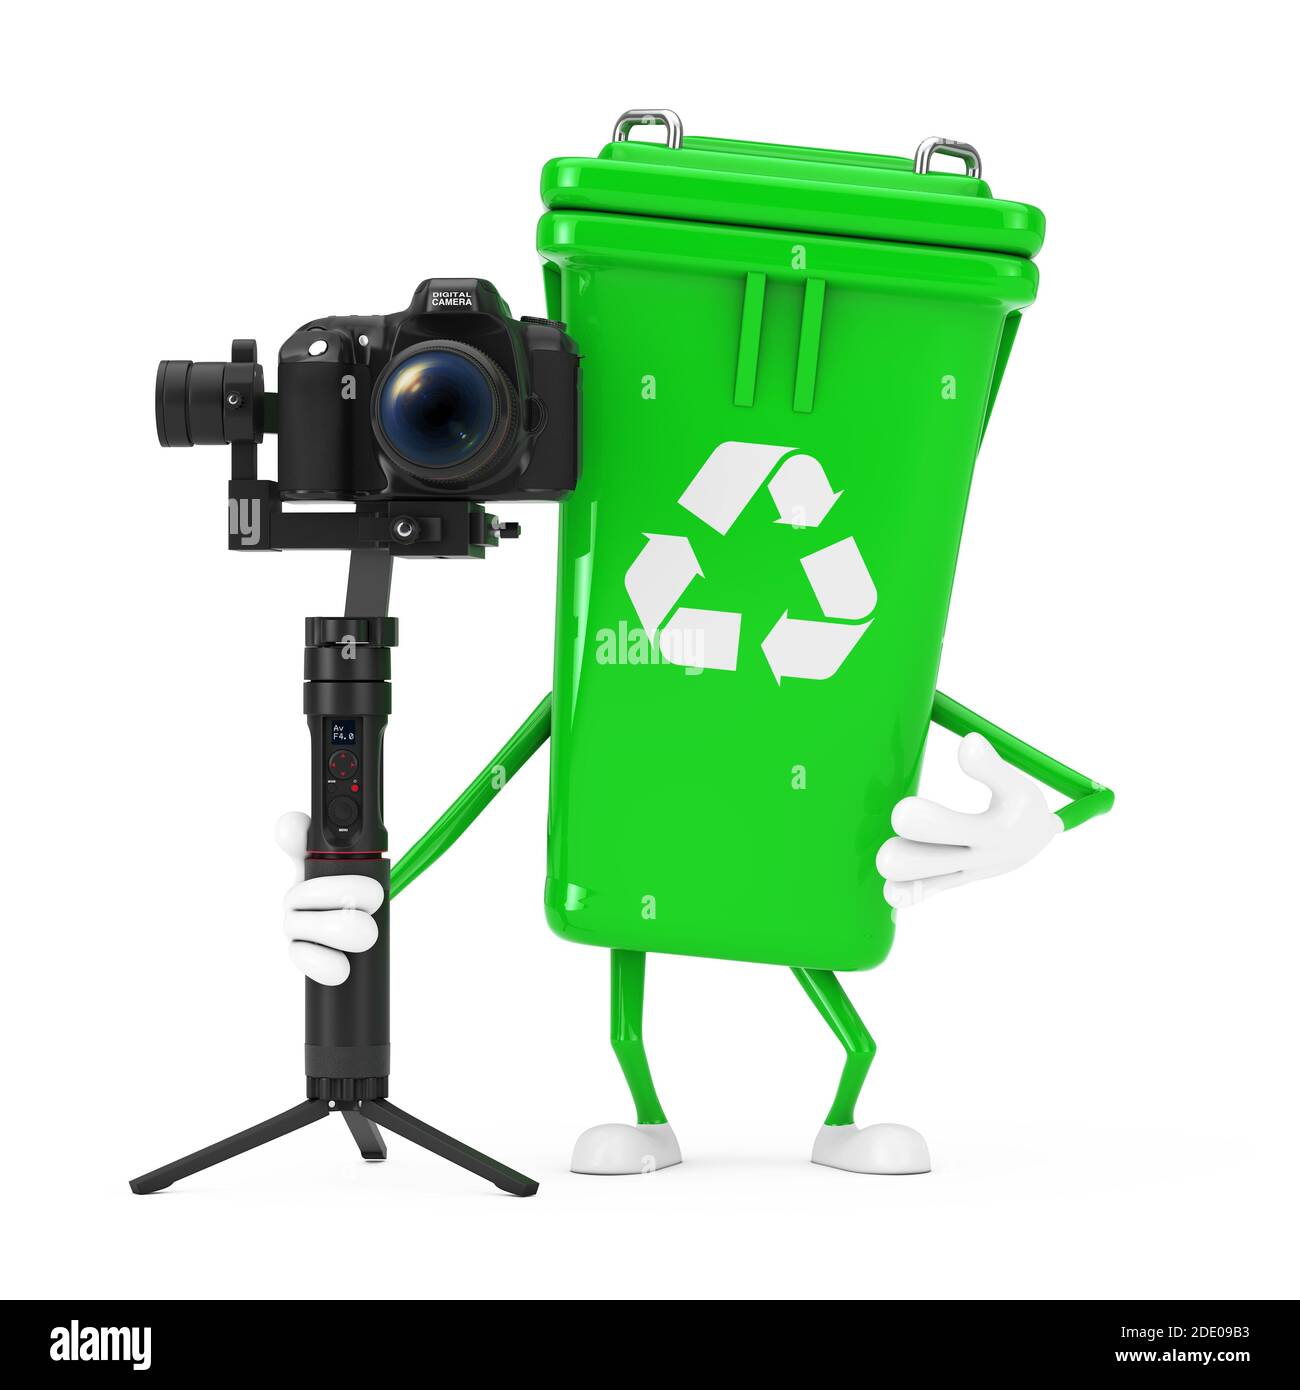 Recycle Sign Green Müll Papierkorb Zeichen Maskottchen mit DSLR oder  Videokamera Gimbal Stabilisierungs-Stativ-System auf einem isolierten  Hintergrund. 3d-Rendering Stockfotografie - Alamy